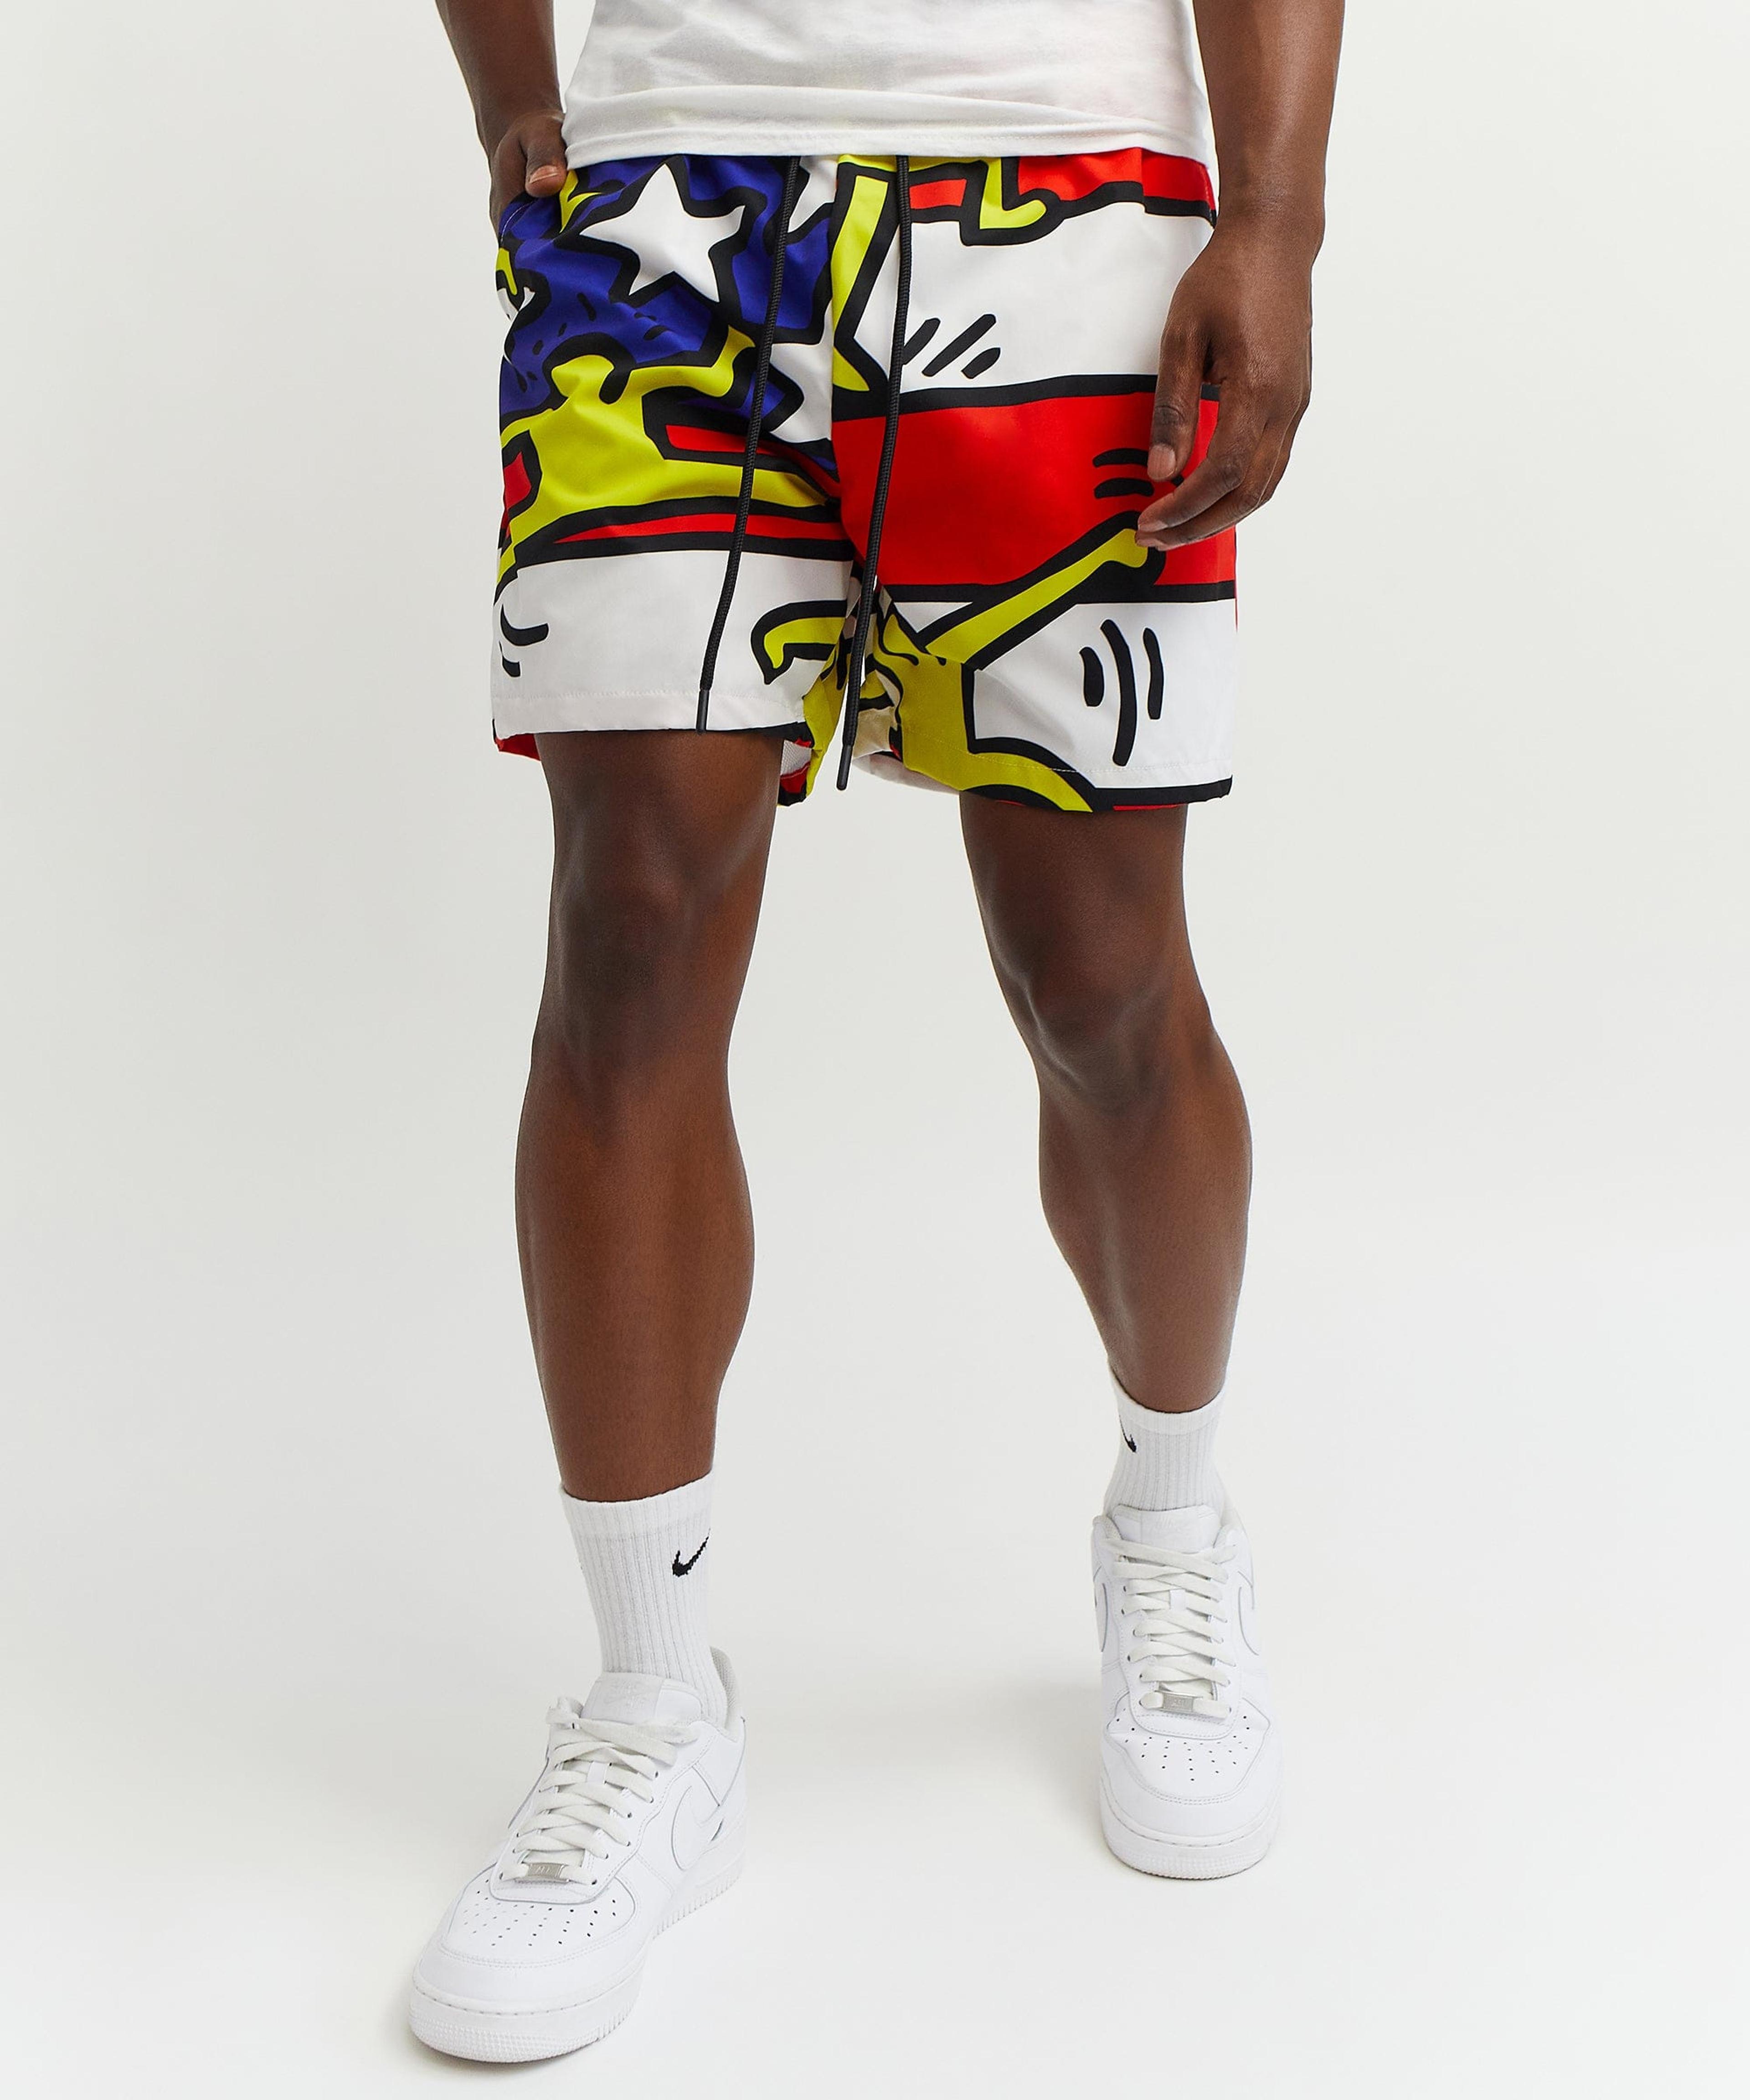 Keith Haring American Flag Shorts